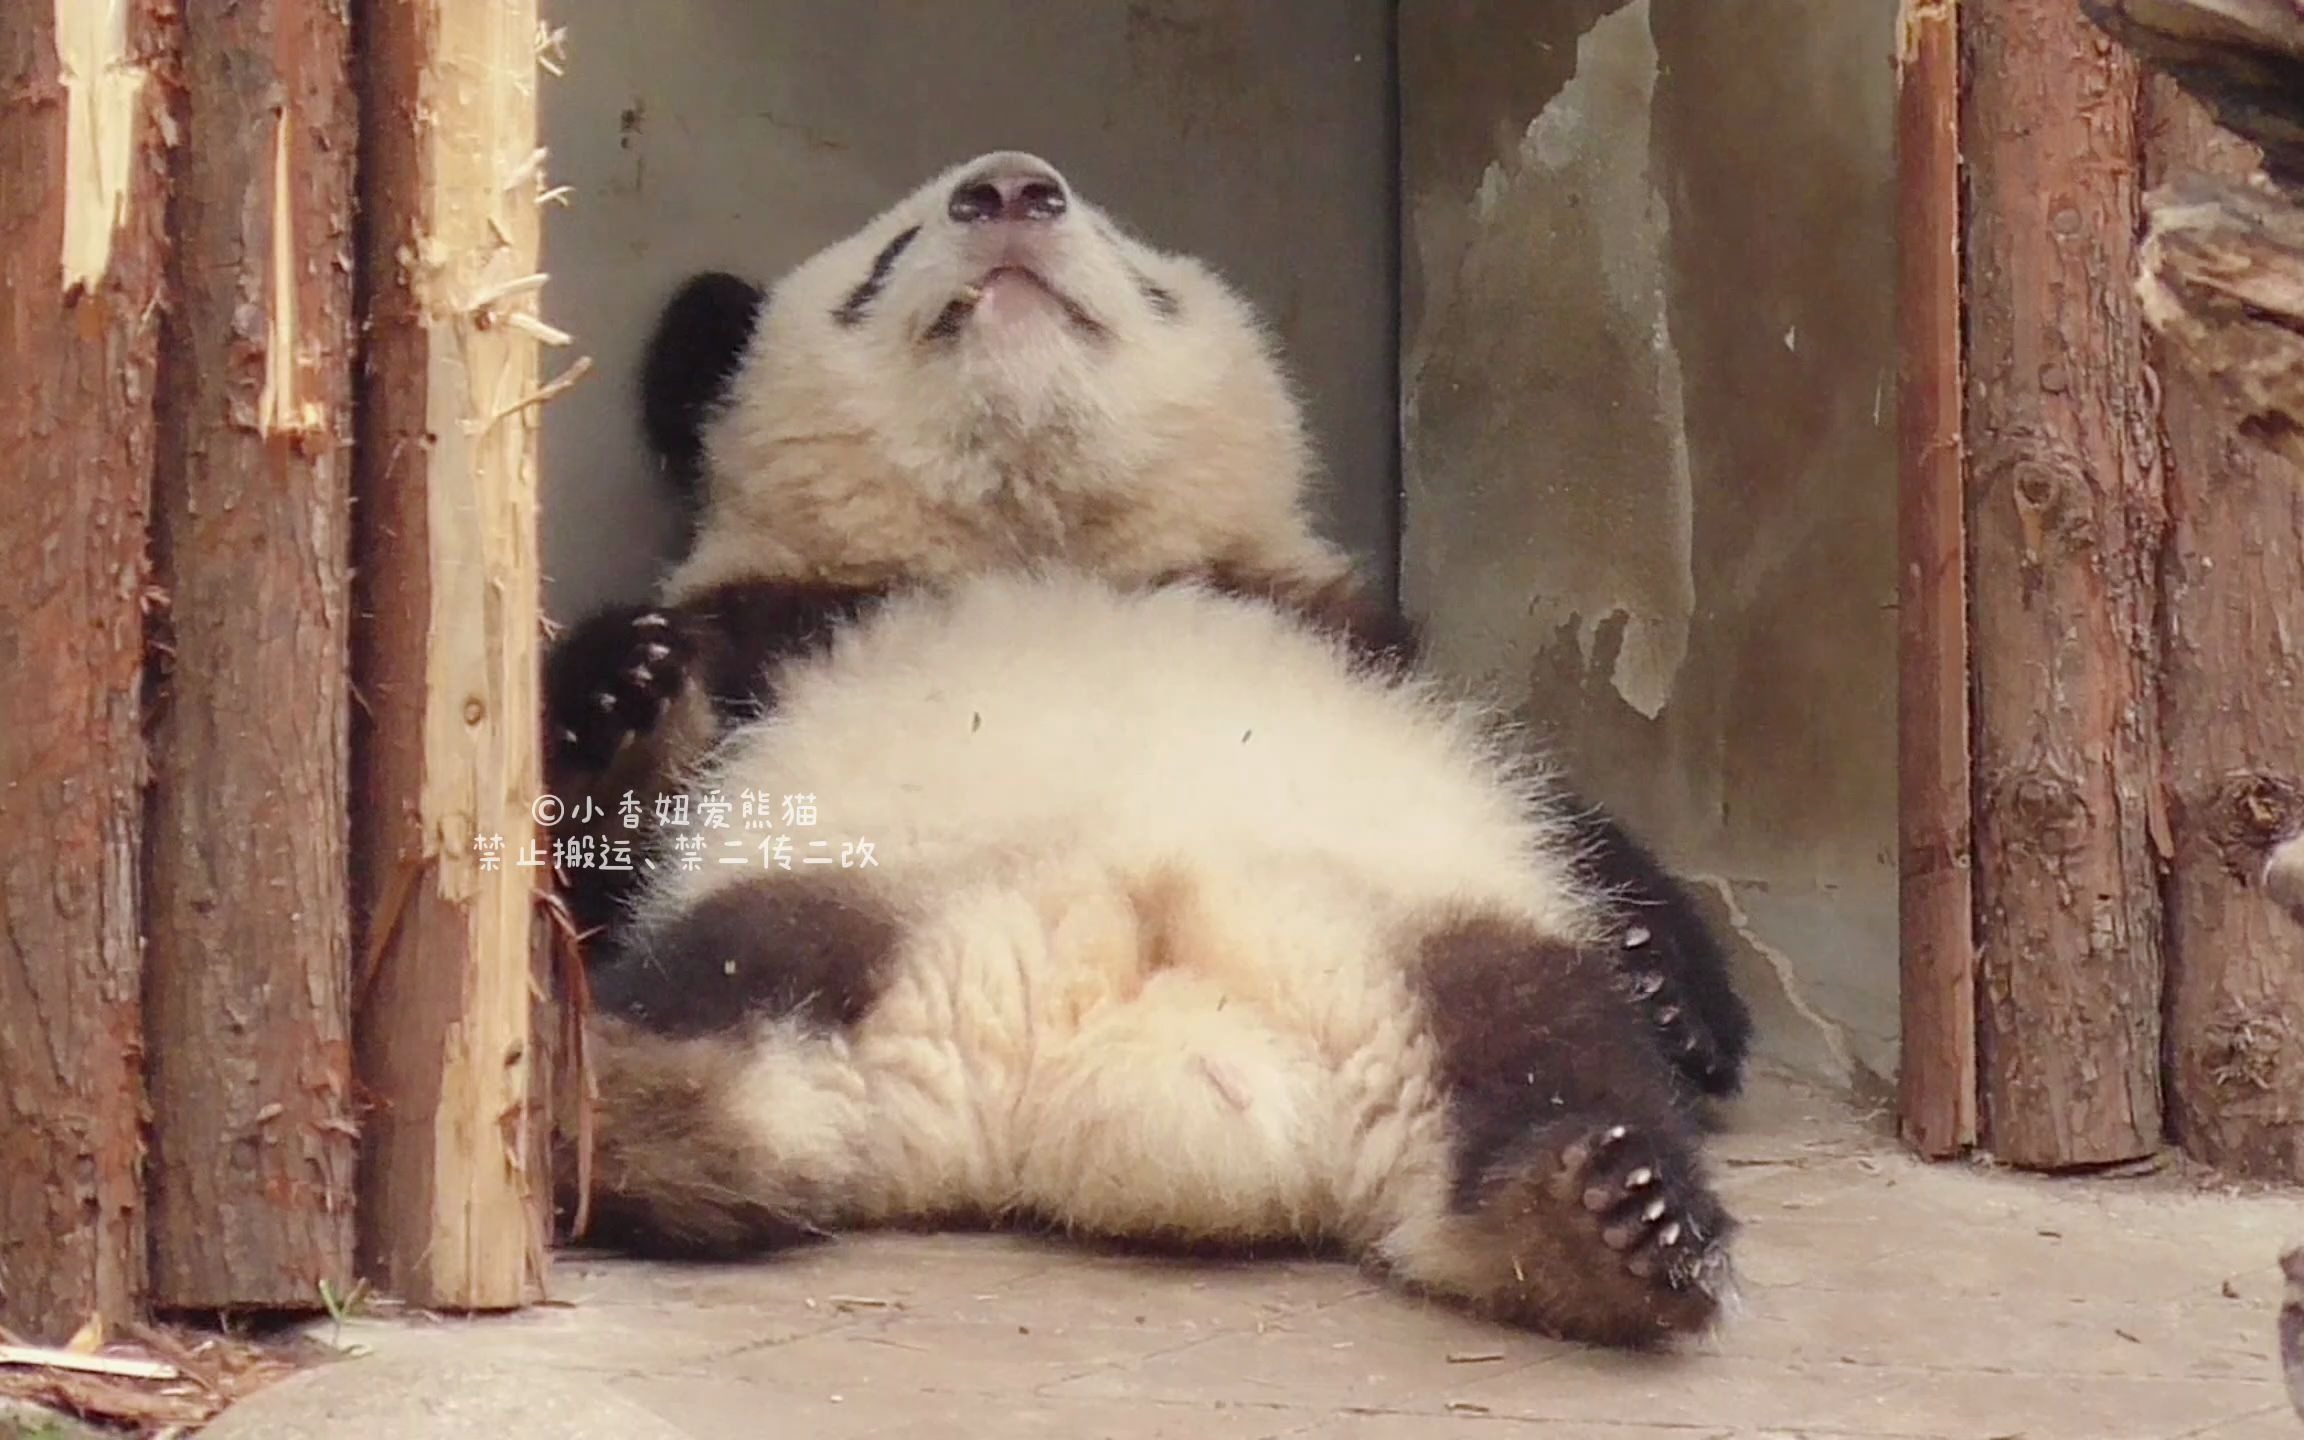 来看看石家庄动物园为大熊猫开启的花式消暑模式吧